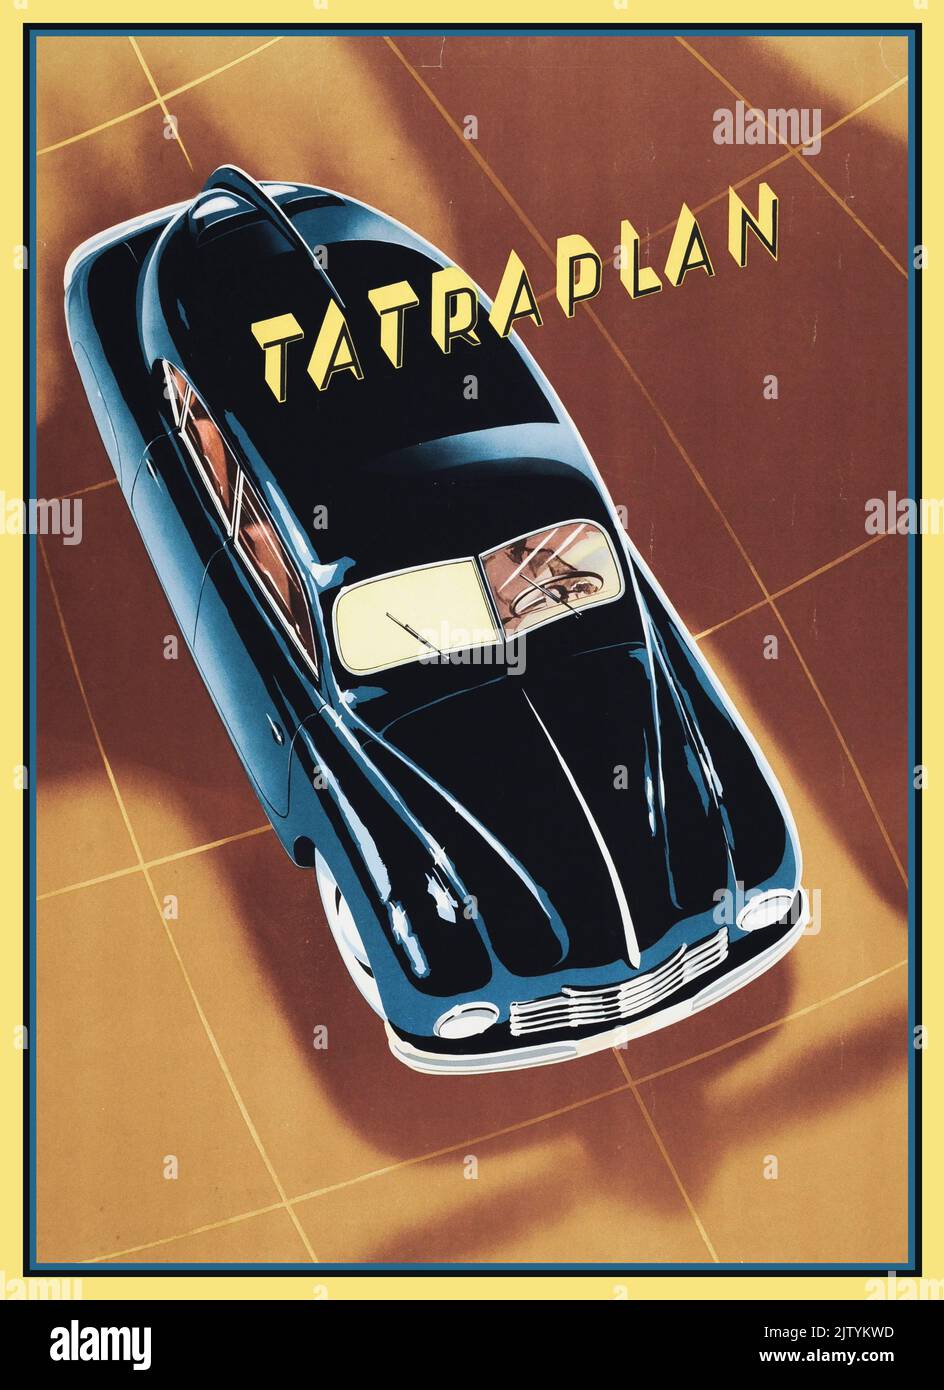 1951 T600 sport indietro Tatraplan pubblicità brochure copertina rivista. Il Tatra 600, chiamato Tatraplan, era una grande vettura a motore posteriore (segmento D in Europa) prodotta dal produttore ceco Tatra dal 1948 al 1952. Il primo prototipo fu terminato nel 1946. Foto Stock